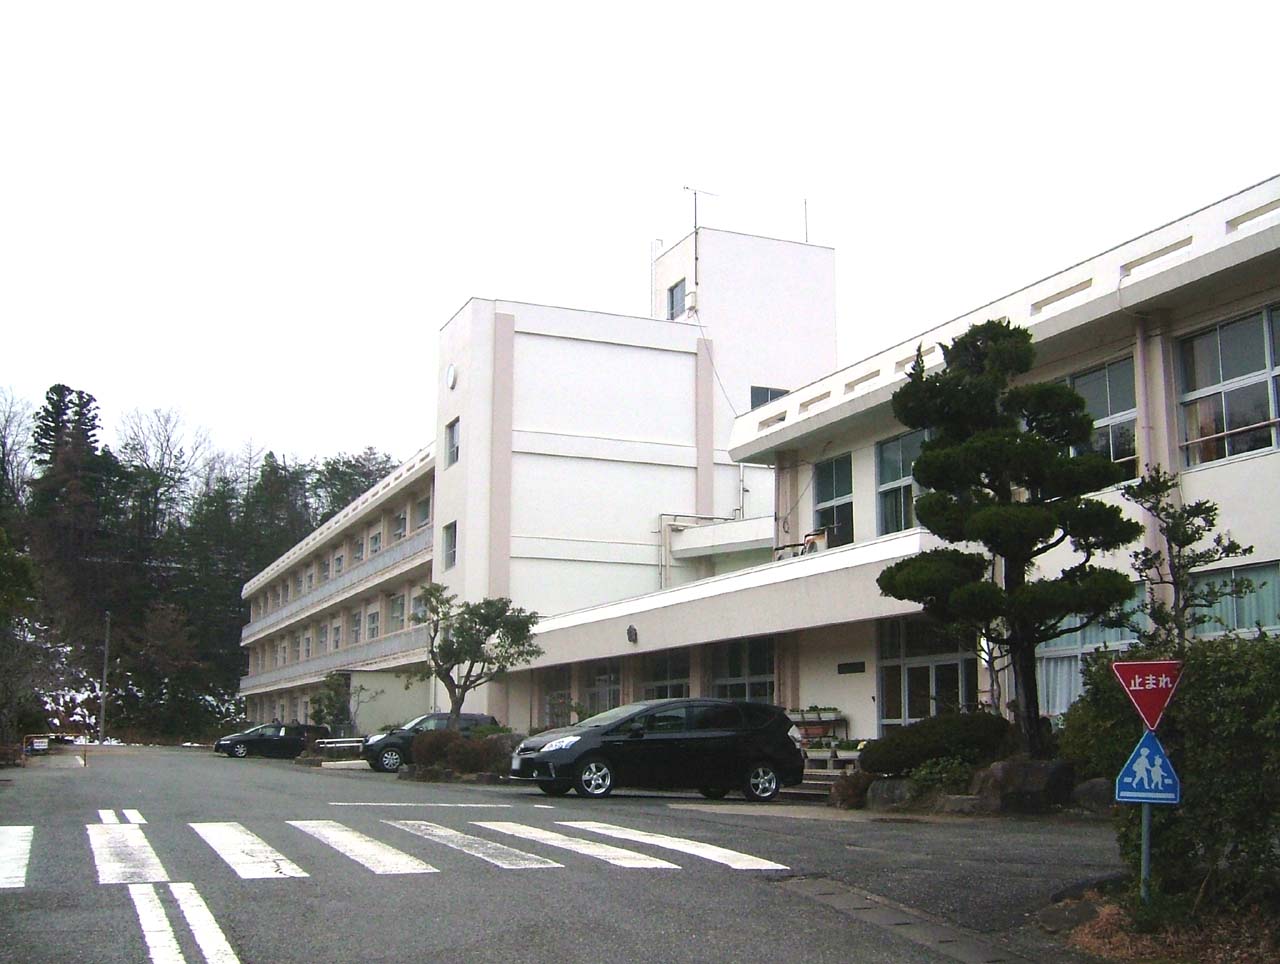 Primary school. Toyooka City Gosho to elementary school (elementary school) 1594m